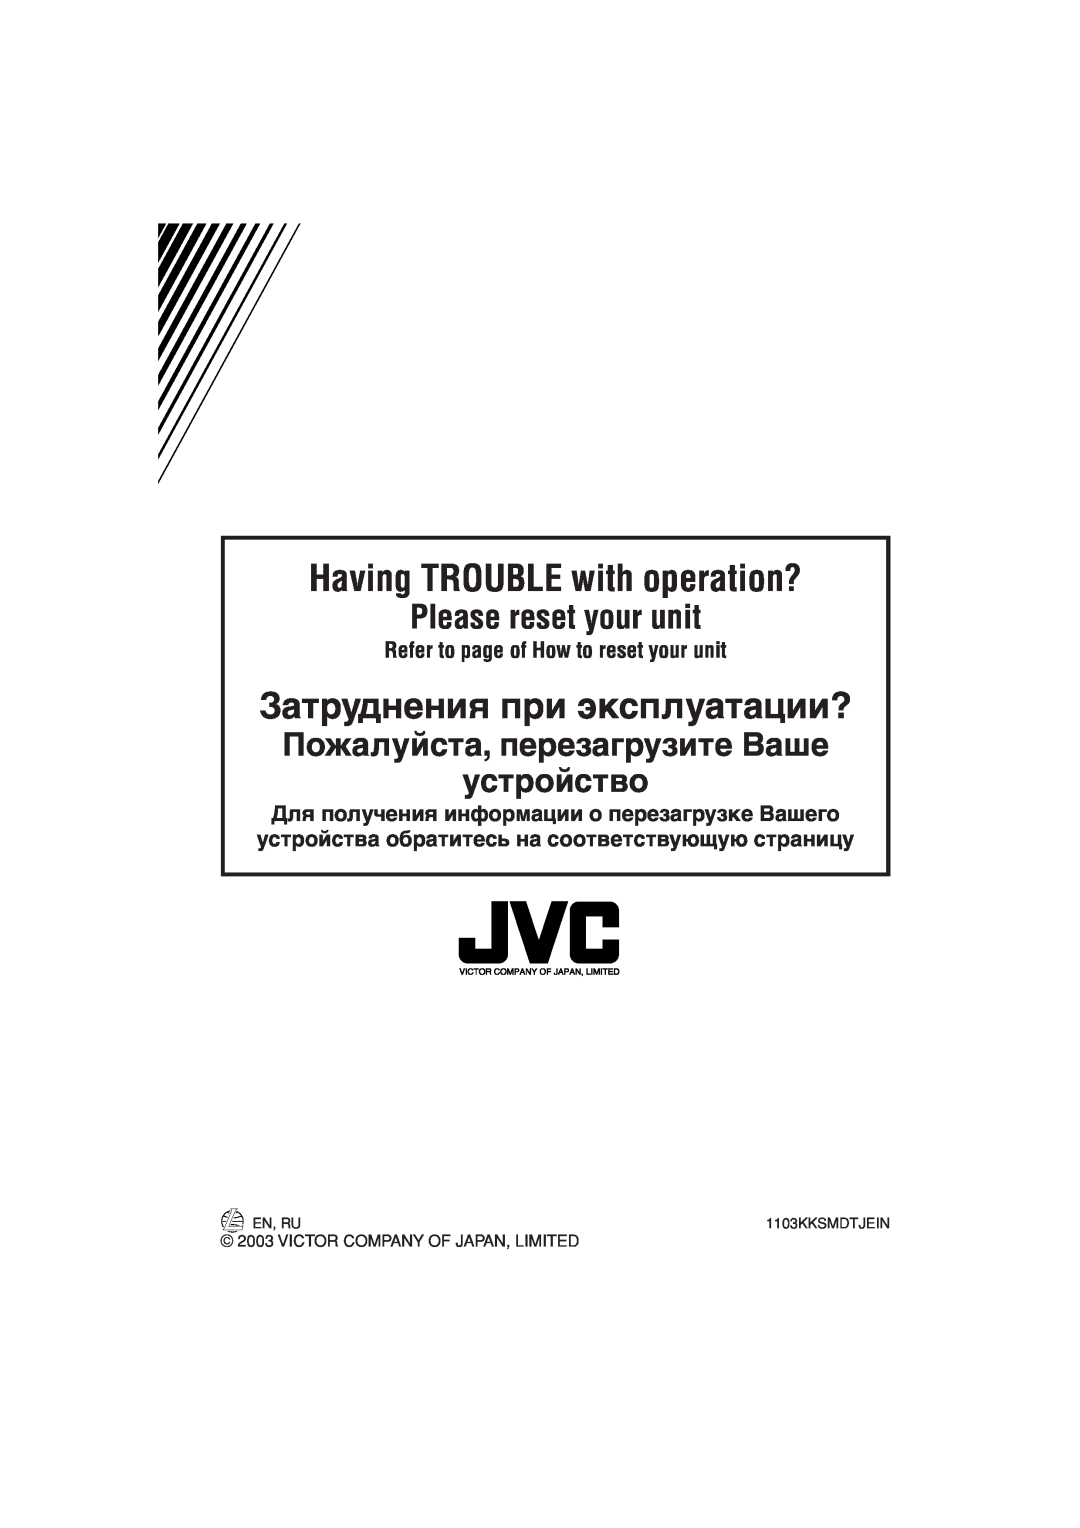 JVC KD-G202 manual Пожалуйста, перезагрузите Ваше устройство, Having TROUBLE with operation?, Затруднения при эксплуатации? 